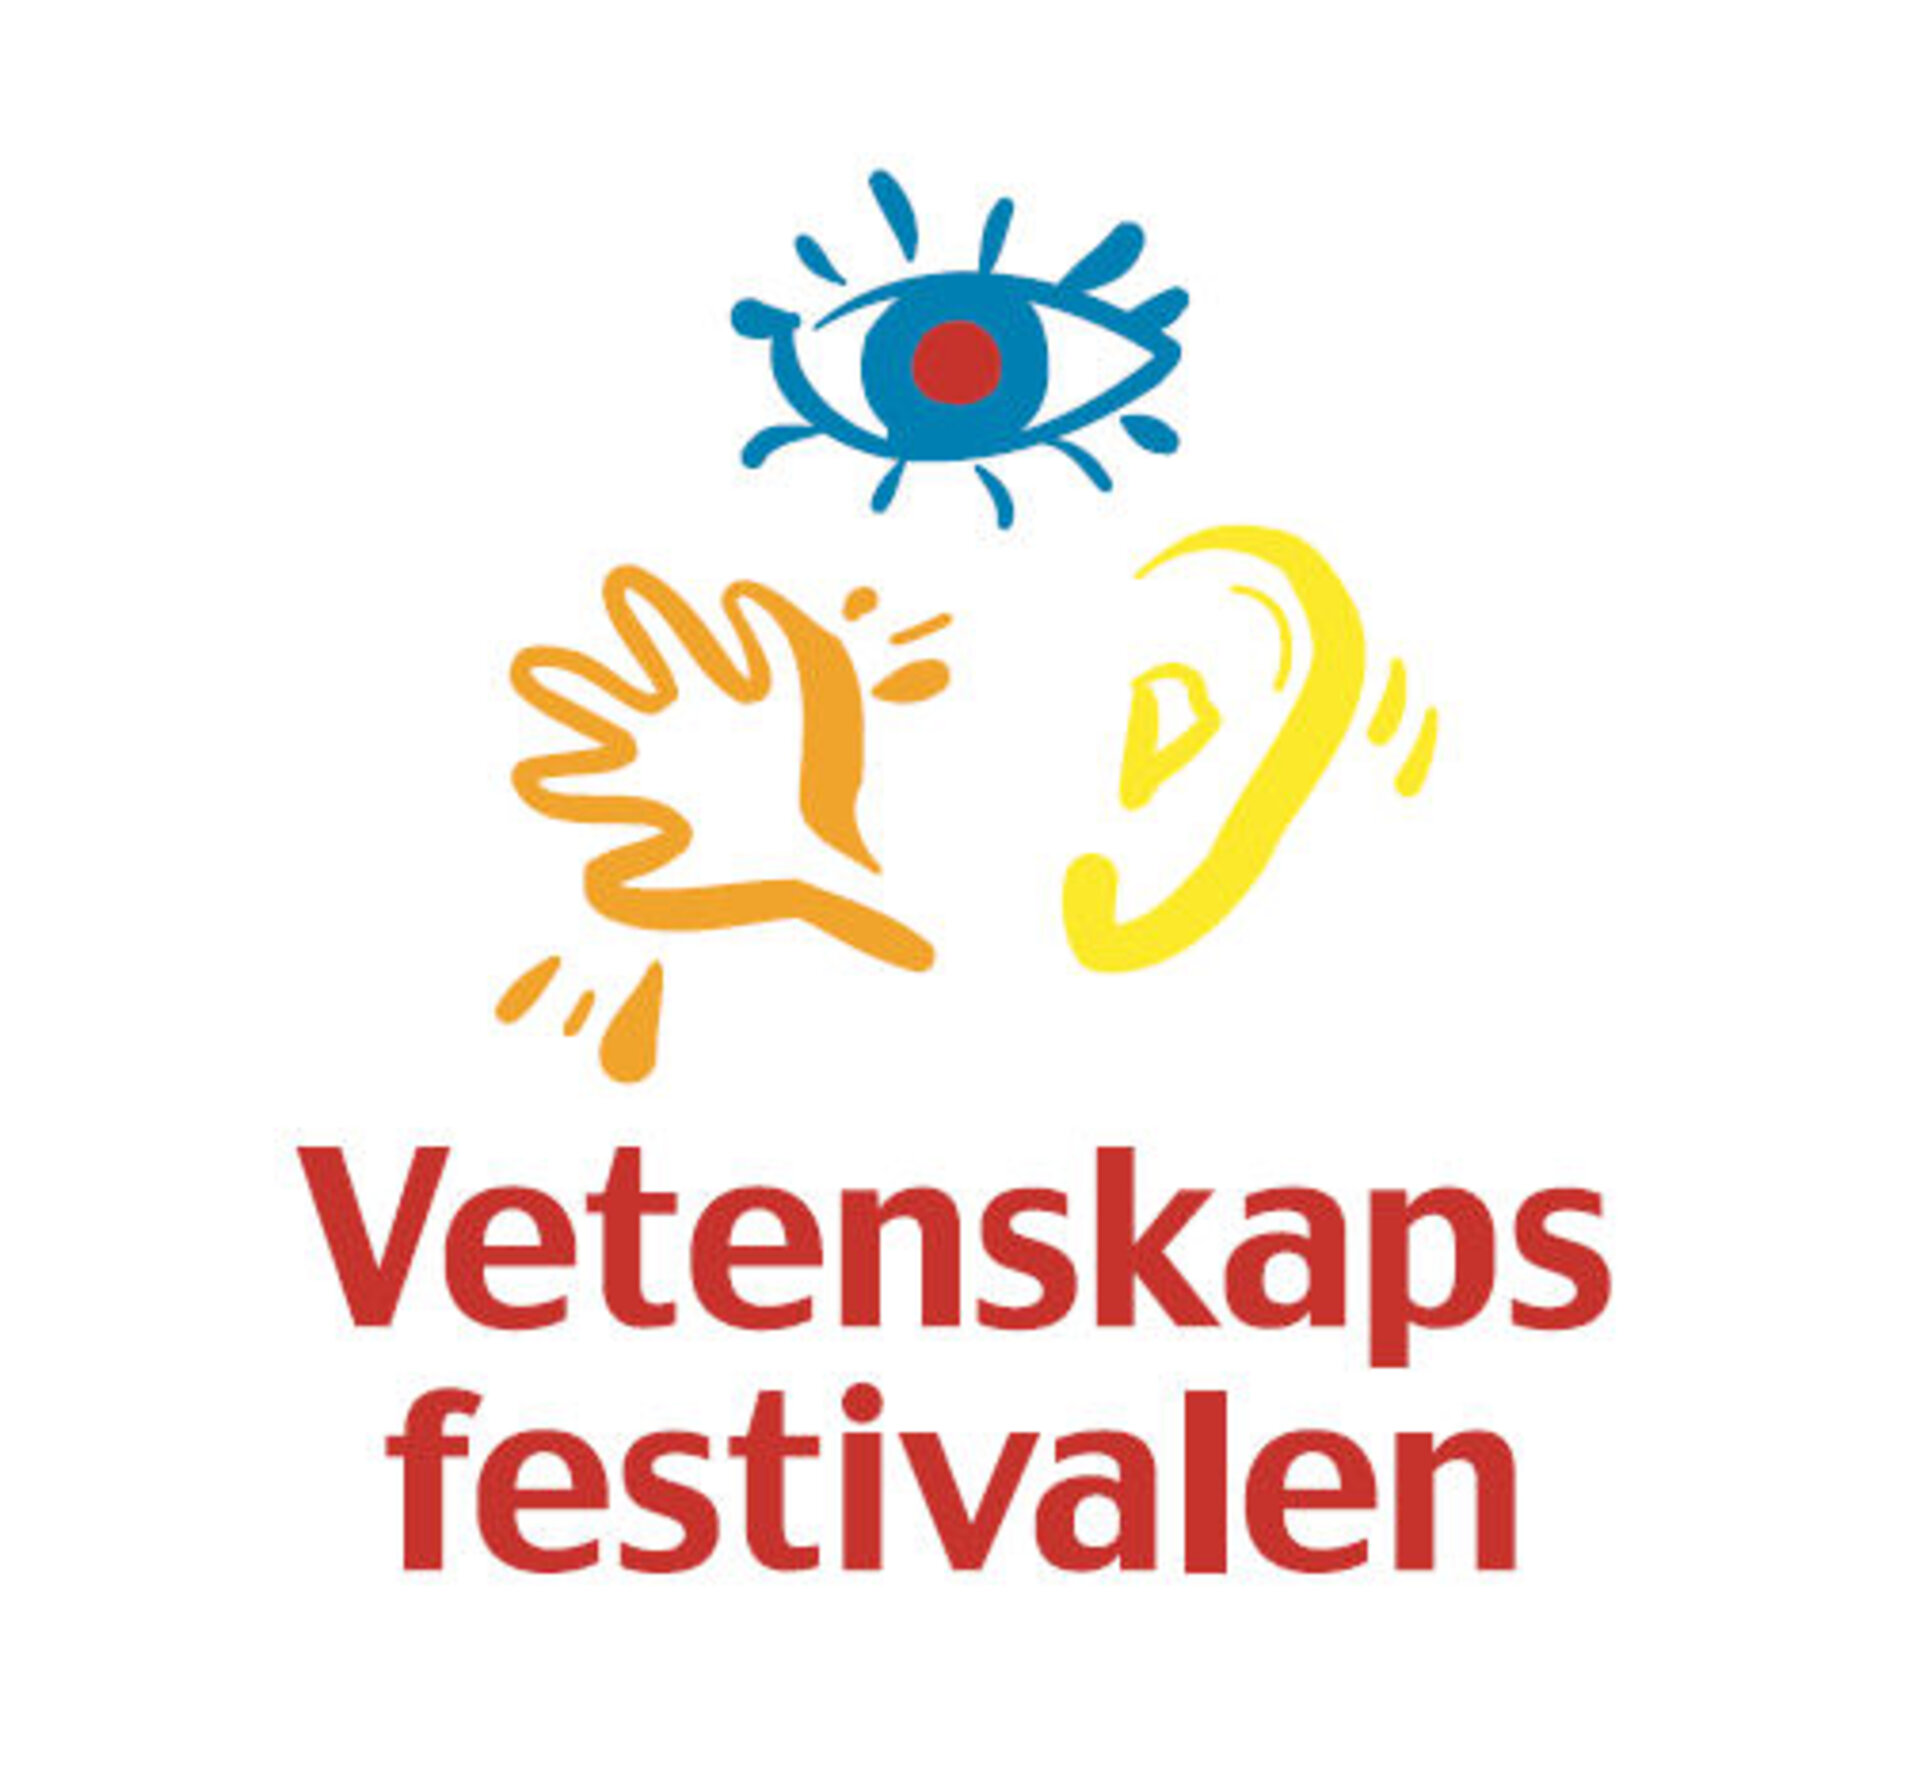 Vetenskapsfestivalen är Sveriges största populärvetenskapliga evenemang